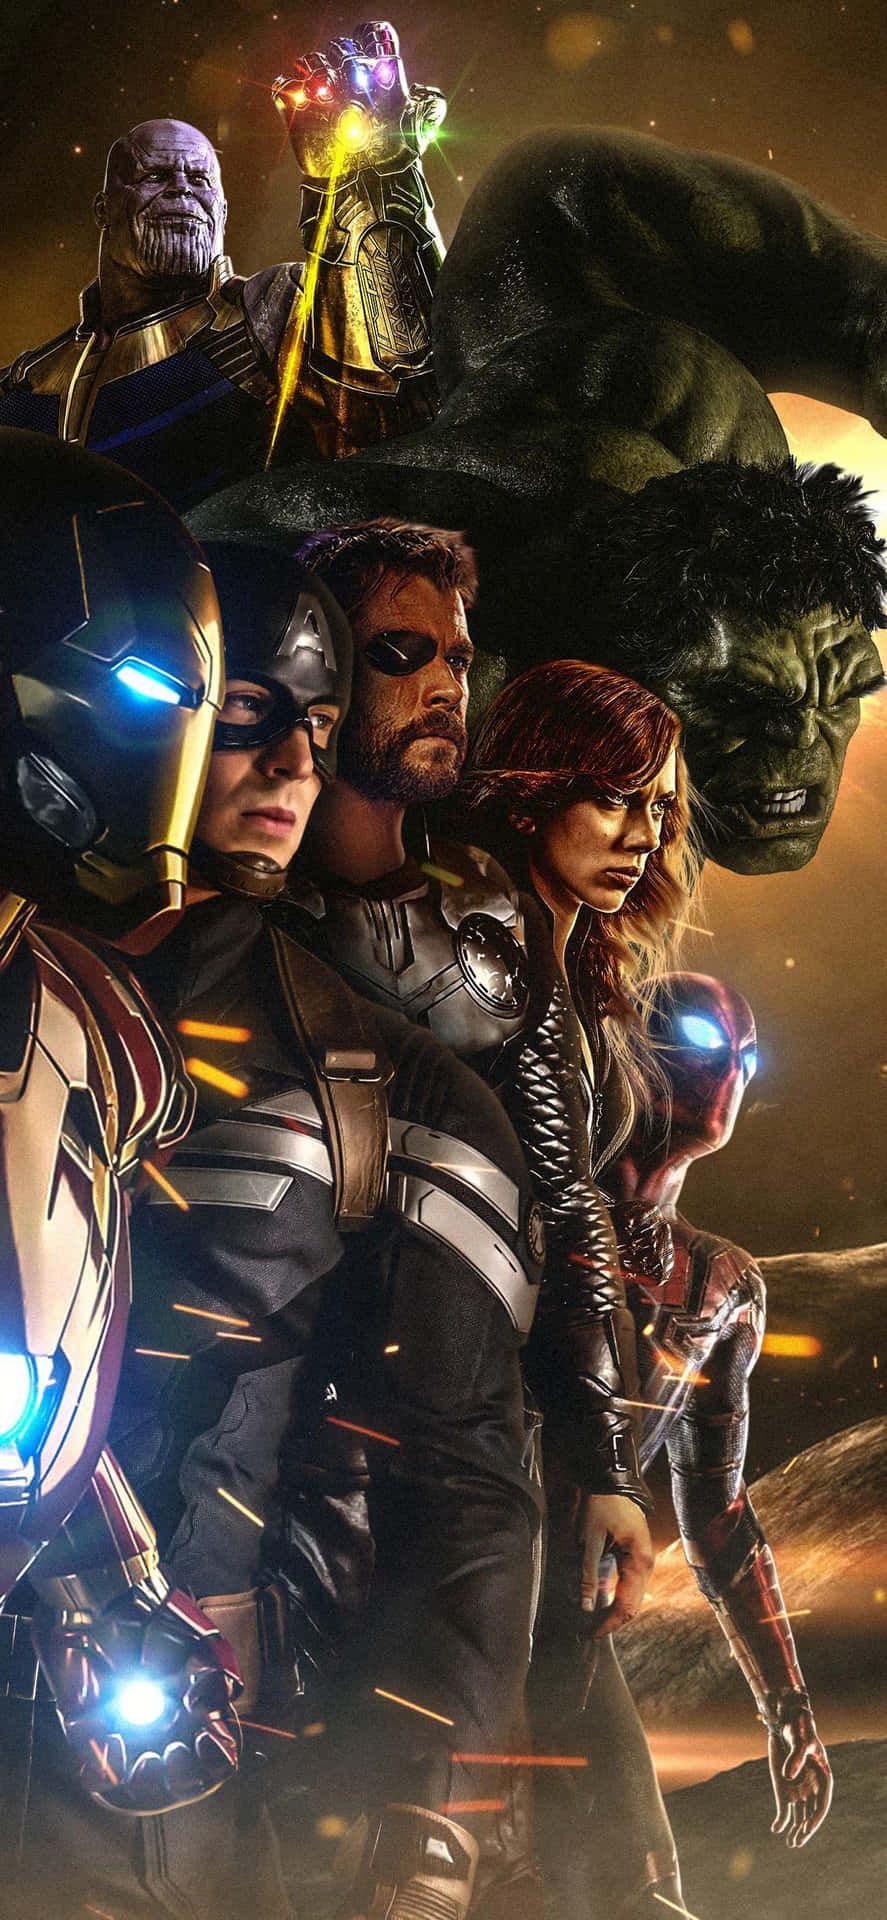 Arteoscuro Y Moderno De Avengers En Iphone Dorado. Fondo de pantalla